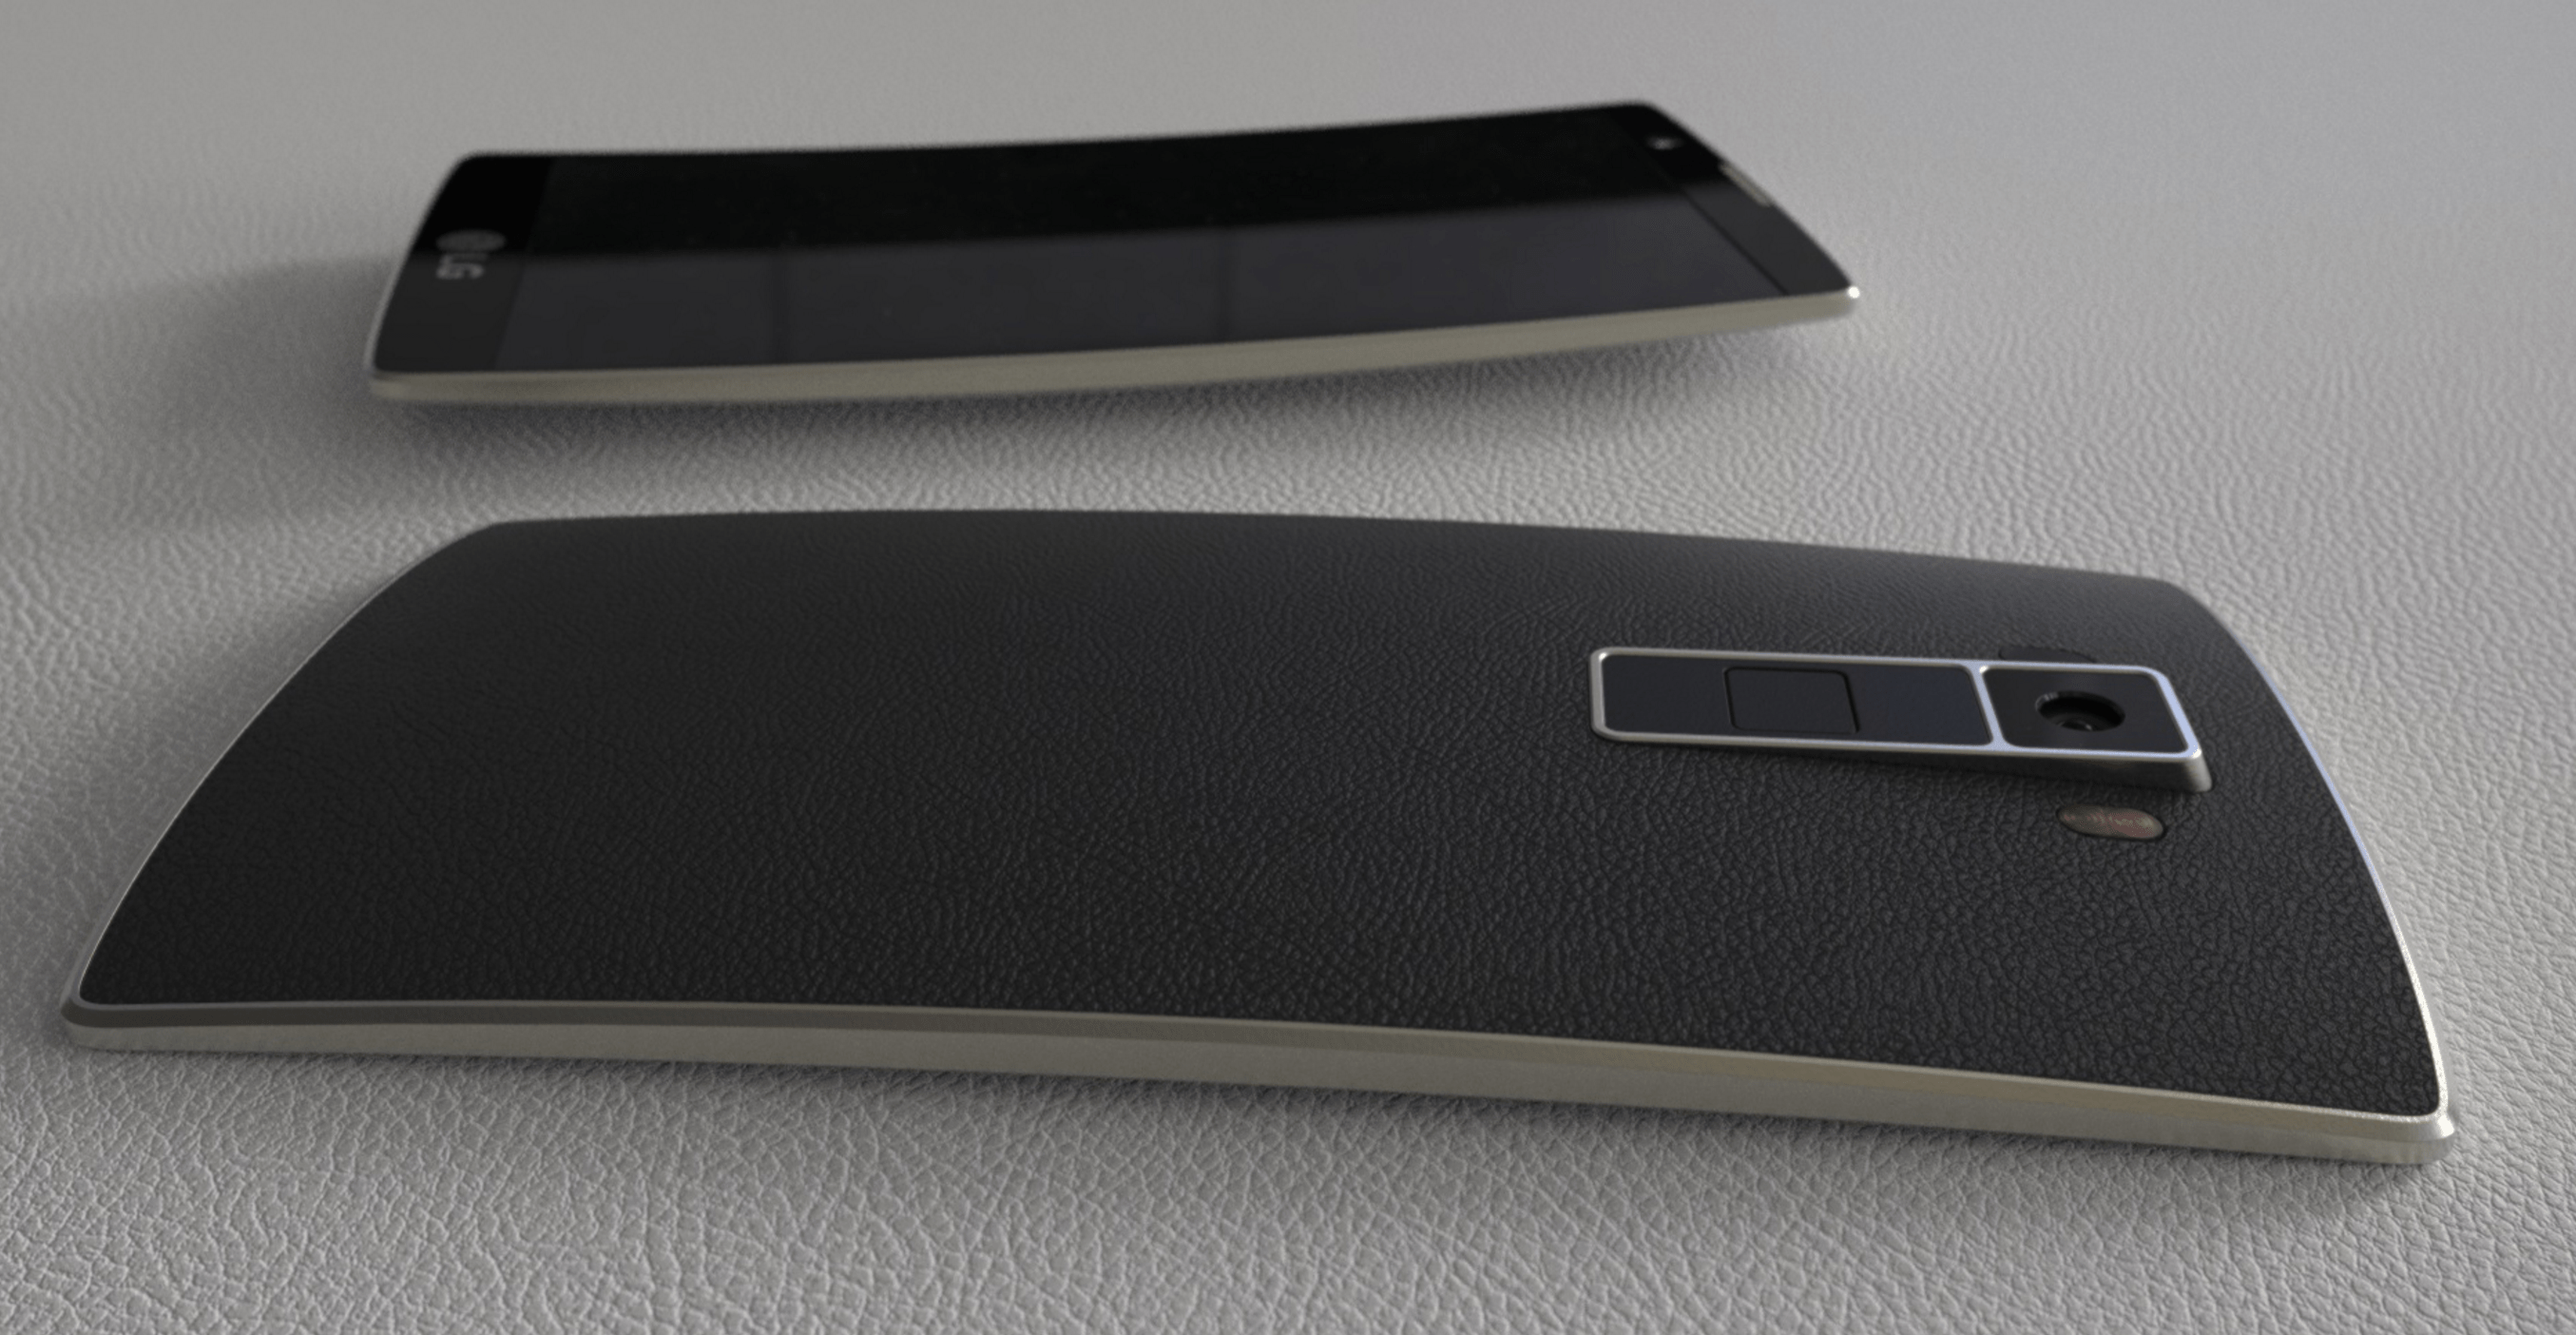 LG G5 : nous nous attendons à un double capteur photo à l’arrière